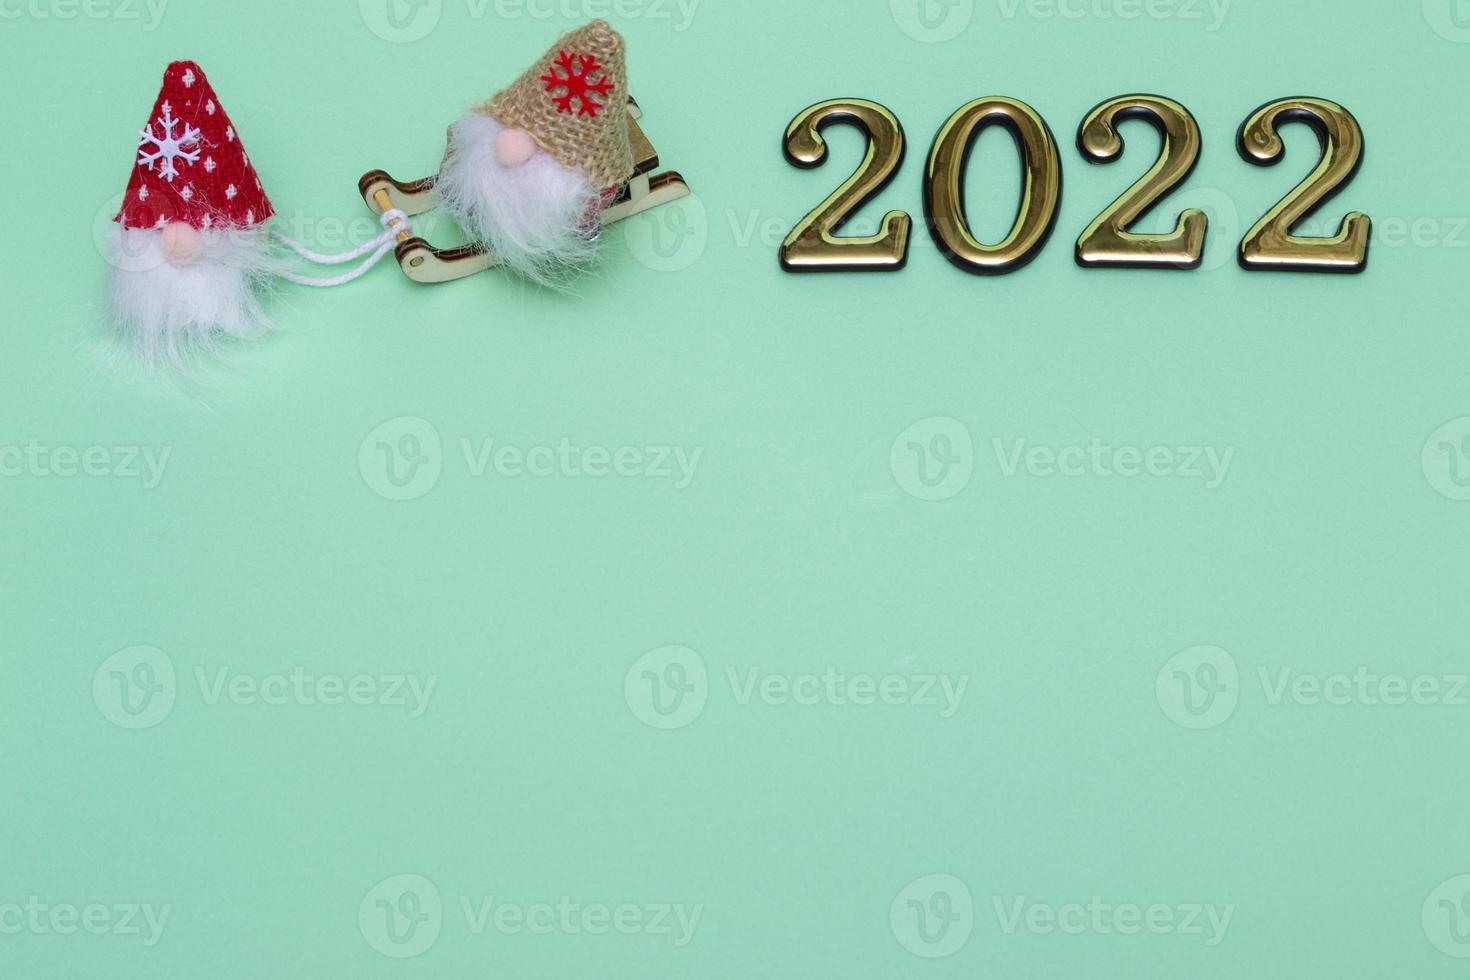 kerstkabouters op slee met gouden cijfers 2022 op blauwe achtergrond met plaats voor tekst foto